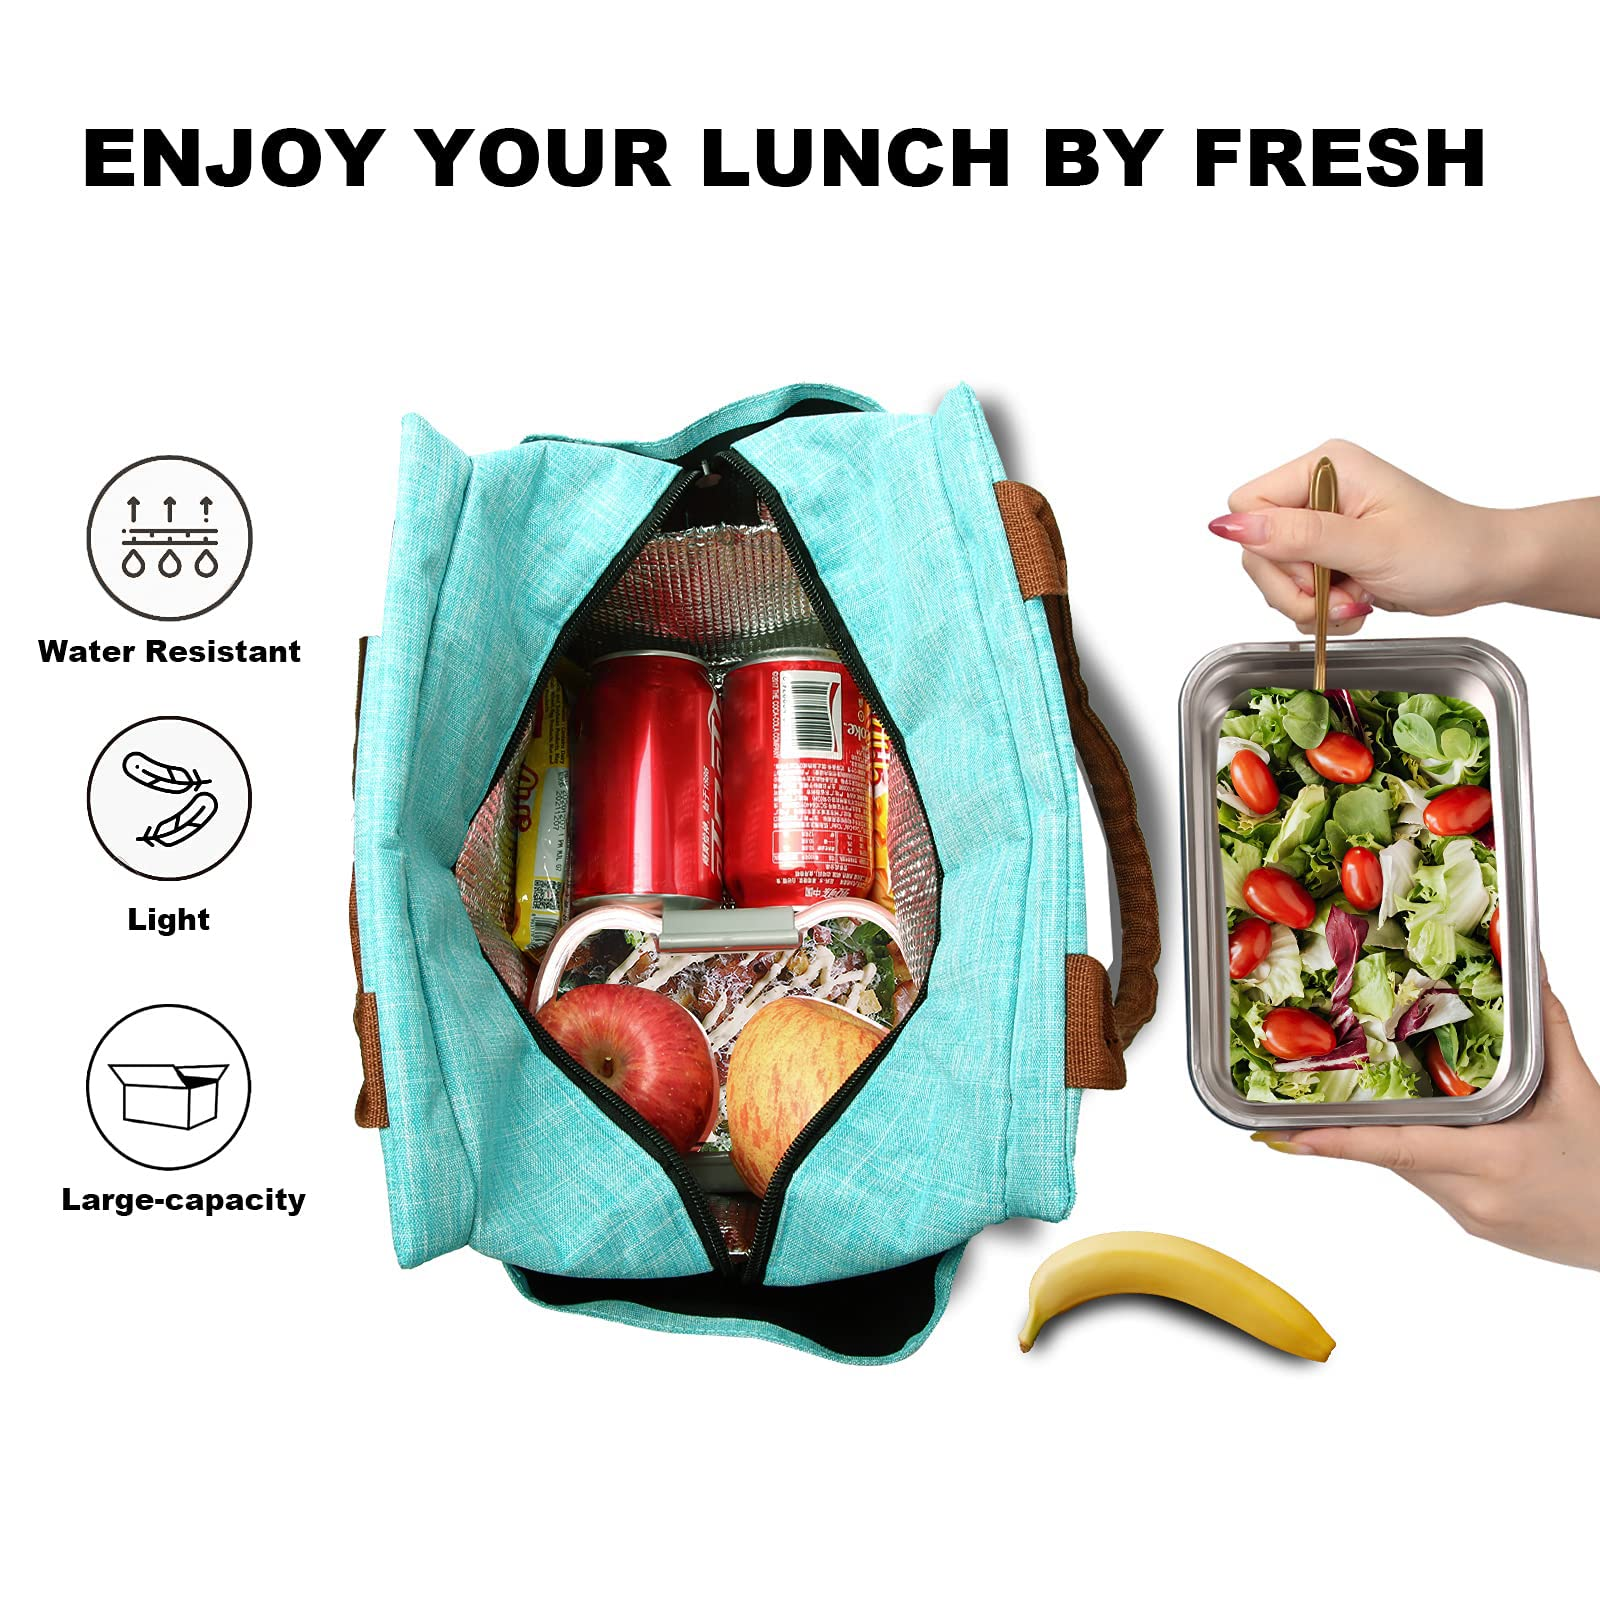 Benutzerdefiniertes Logo Damen Isolierte Lunchbox Große wiederverwendbare langlebige Kühltasche für Arbeit, Büro, Reise, Picknick